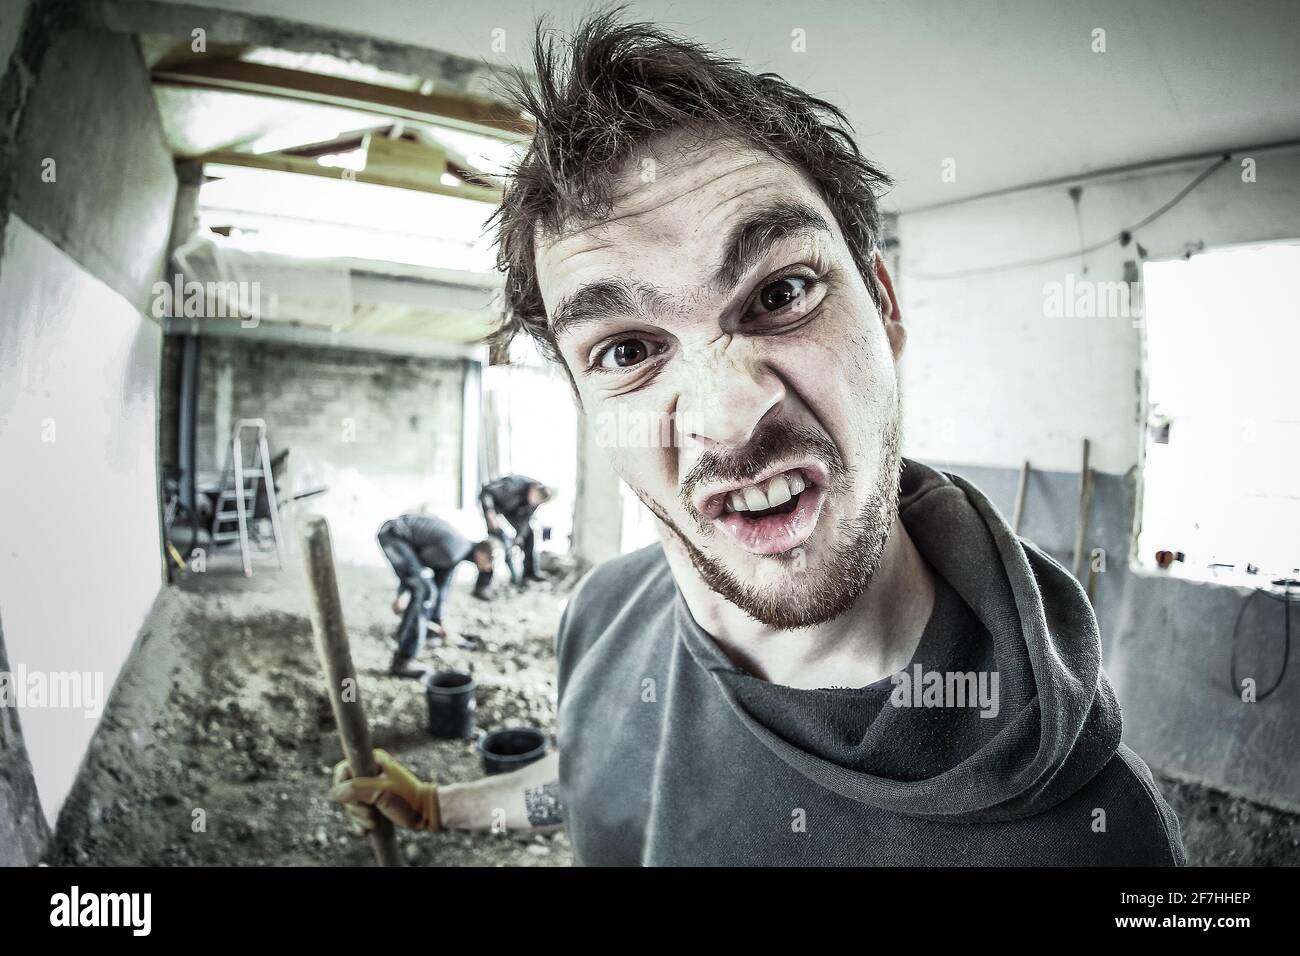 Ein Arbeiter, der ein dummes Gesicht beim Renovieren eines Hauses macht. Andere Arbeiter im Hintergrund. Fisheye-Ansicht. Stockfoto